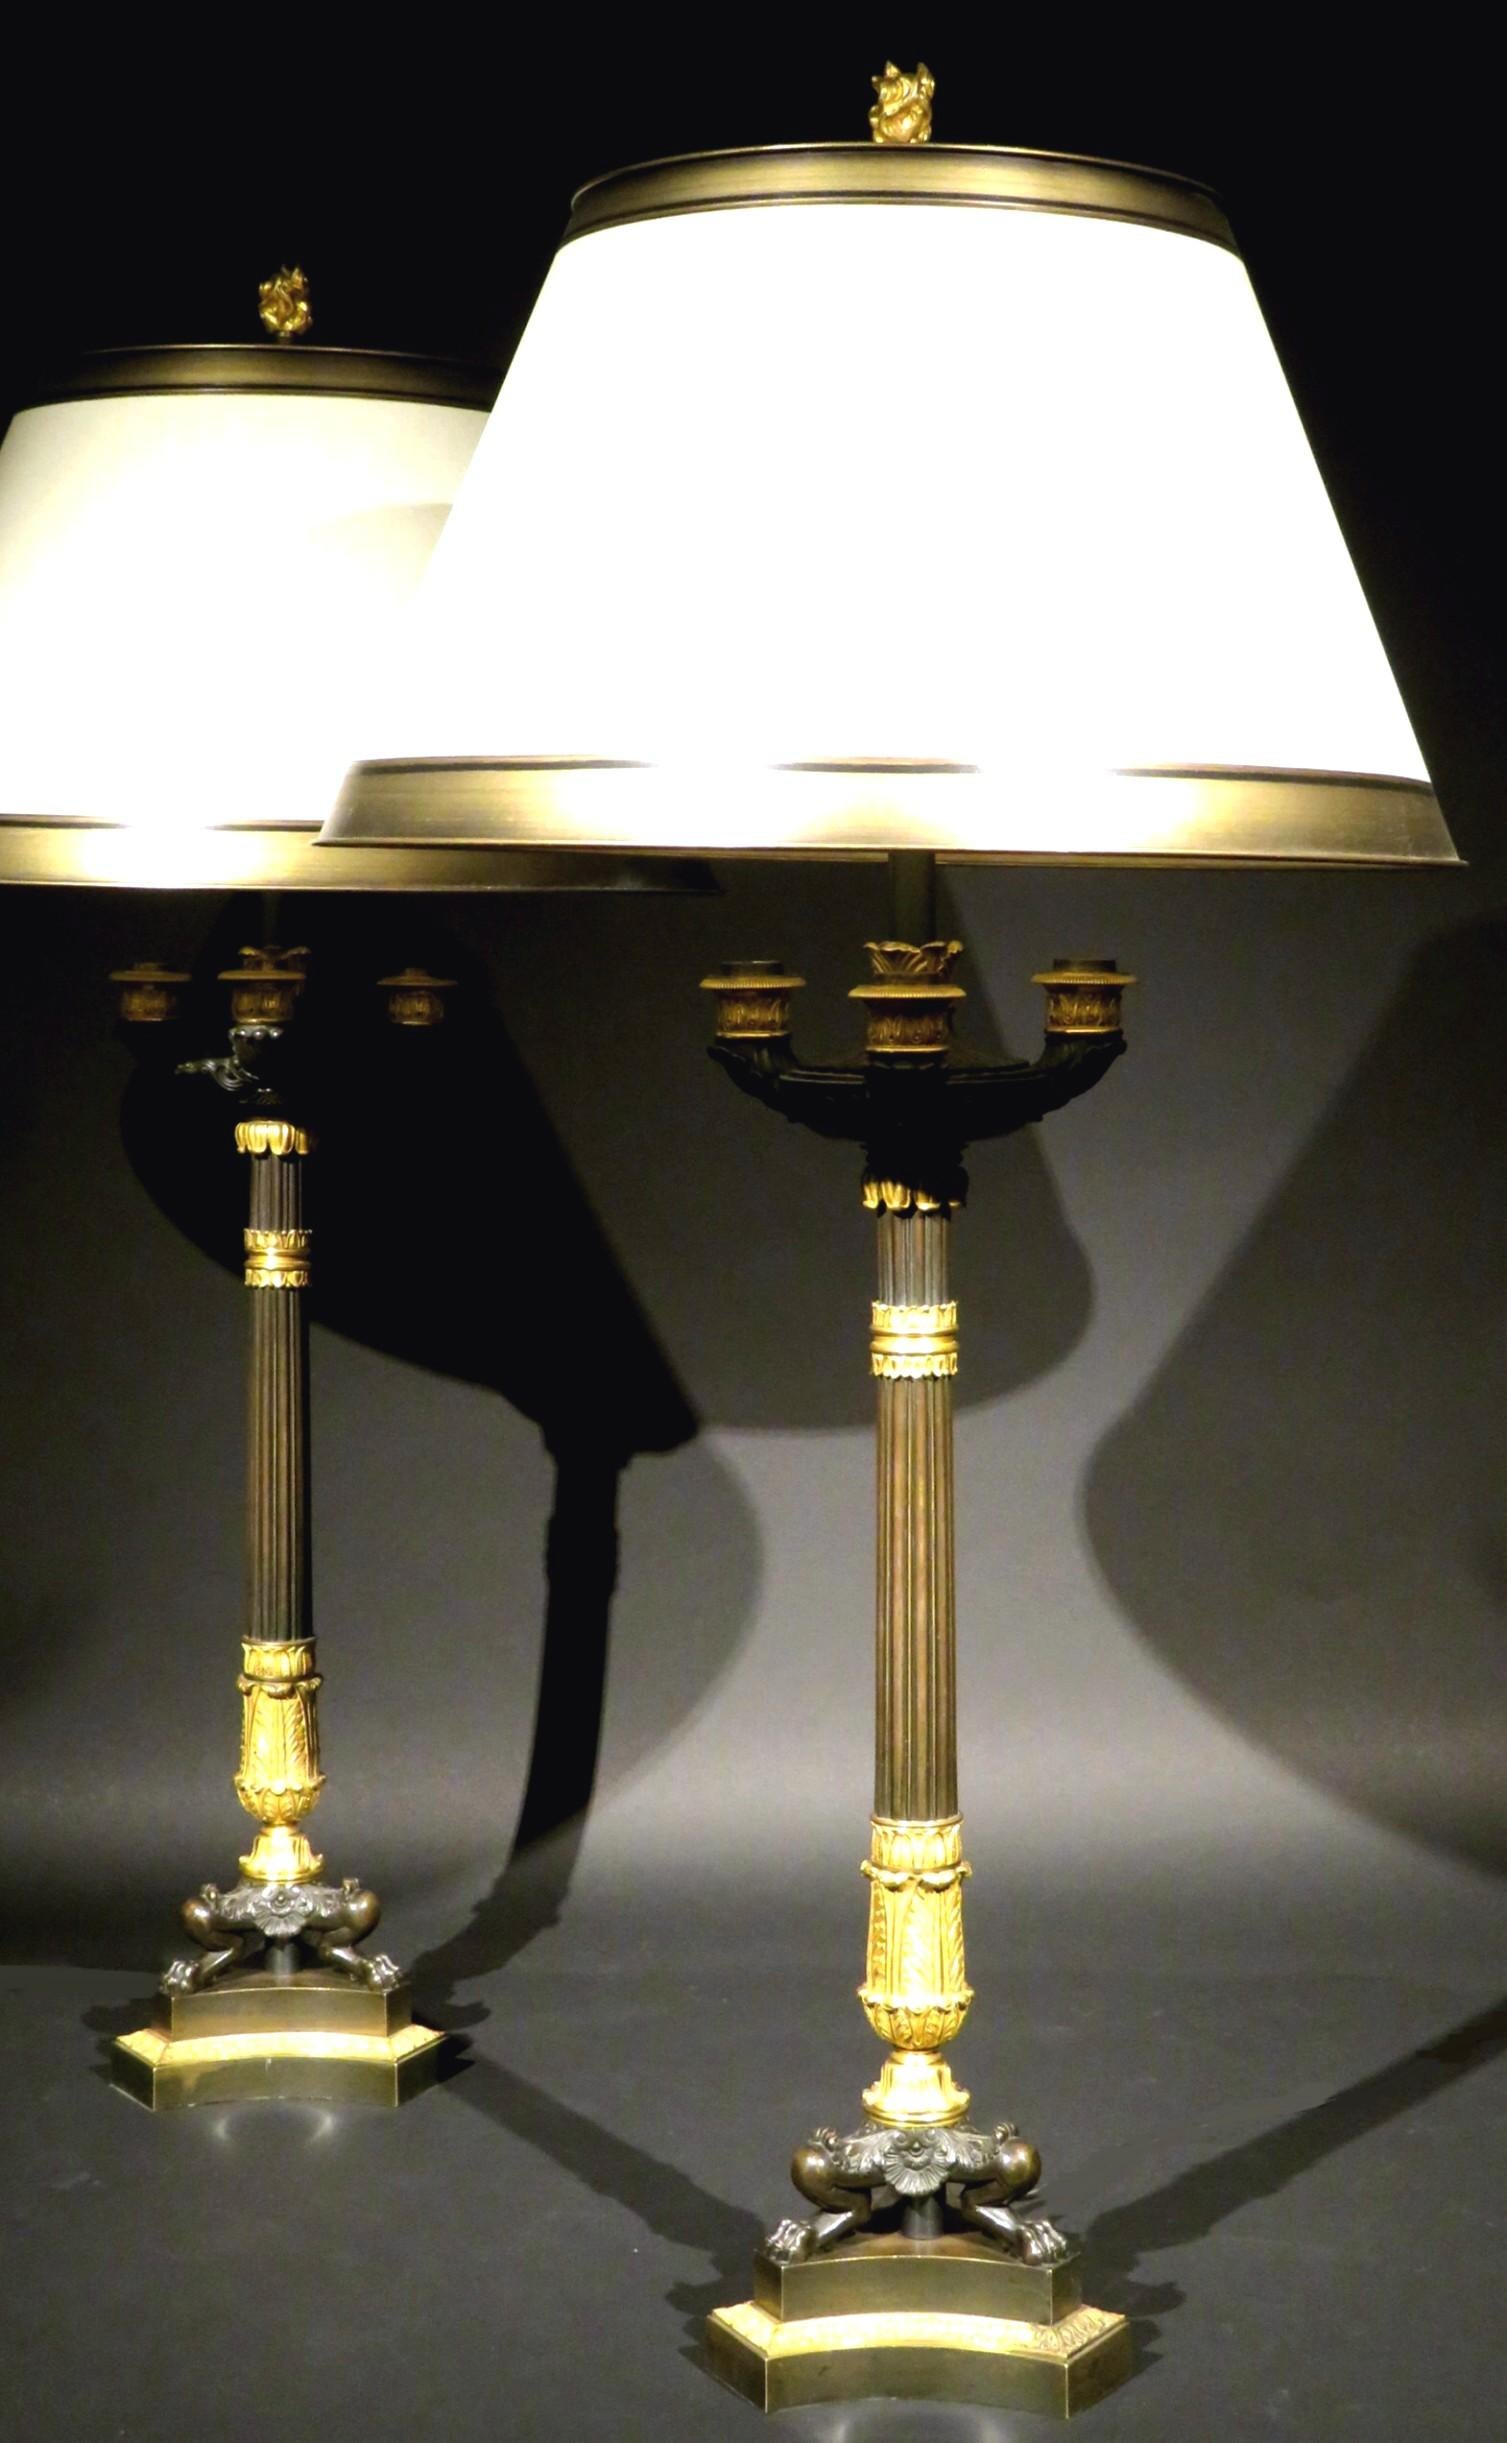 Une très belle paire de candélabres à 3 lumières en bronze doré de la période Empire, d'une qualité exceptionnelle et de belles proportions, ayant été convertis en lampes de table il y a plusieurs dizaines d'années. Toutes deux présentent des